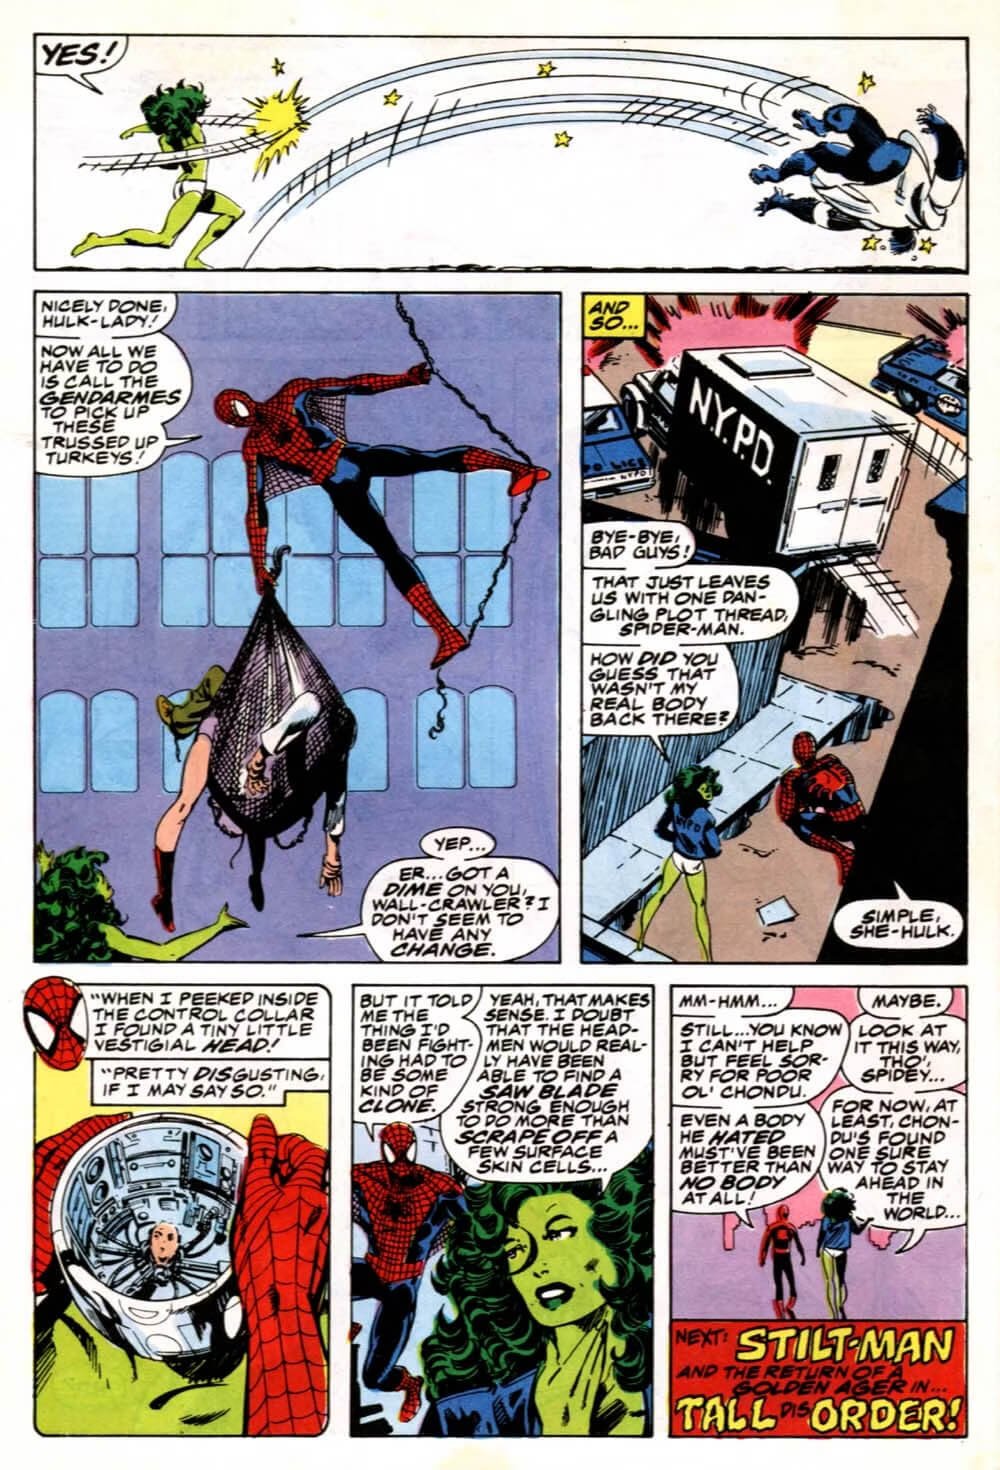 Spider-Man non reagisce allo sfondamento della quarta parete da parte di Jen in Sensational She-Hulk 3, disegni di John Byrne